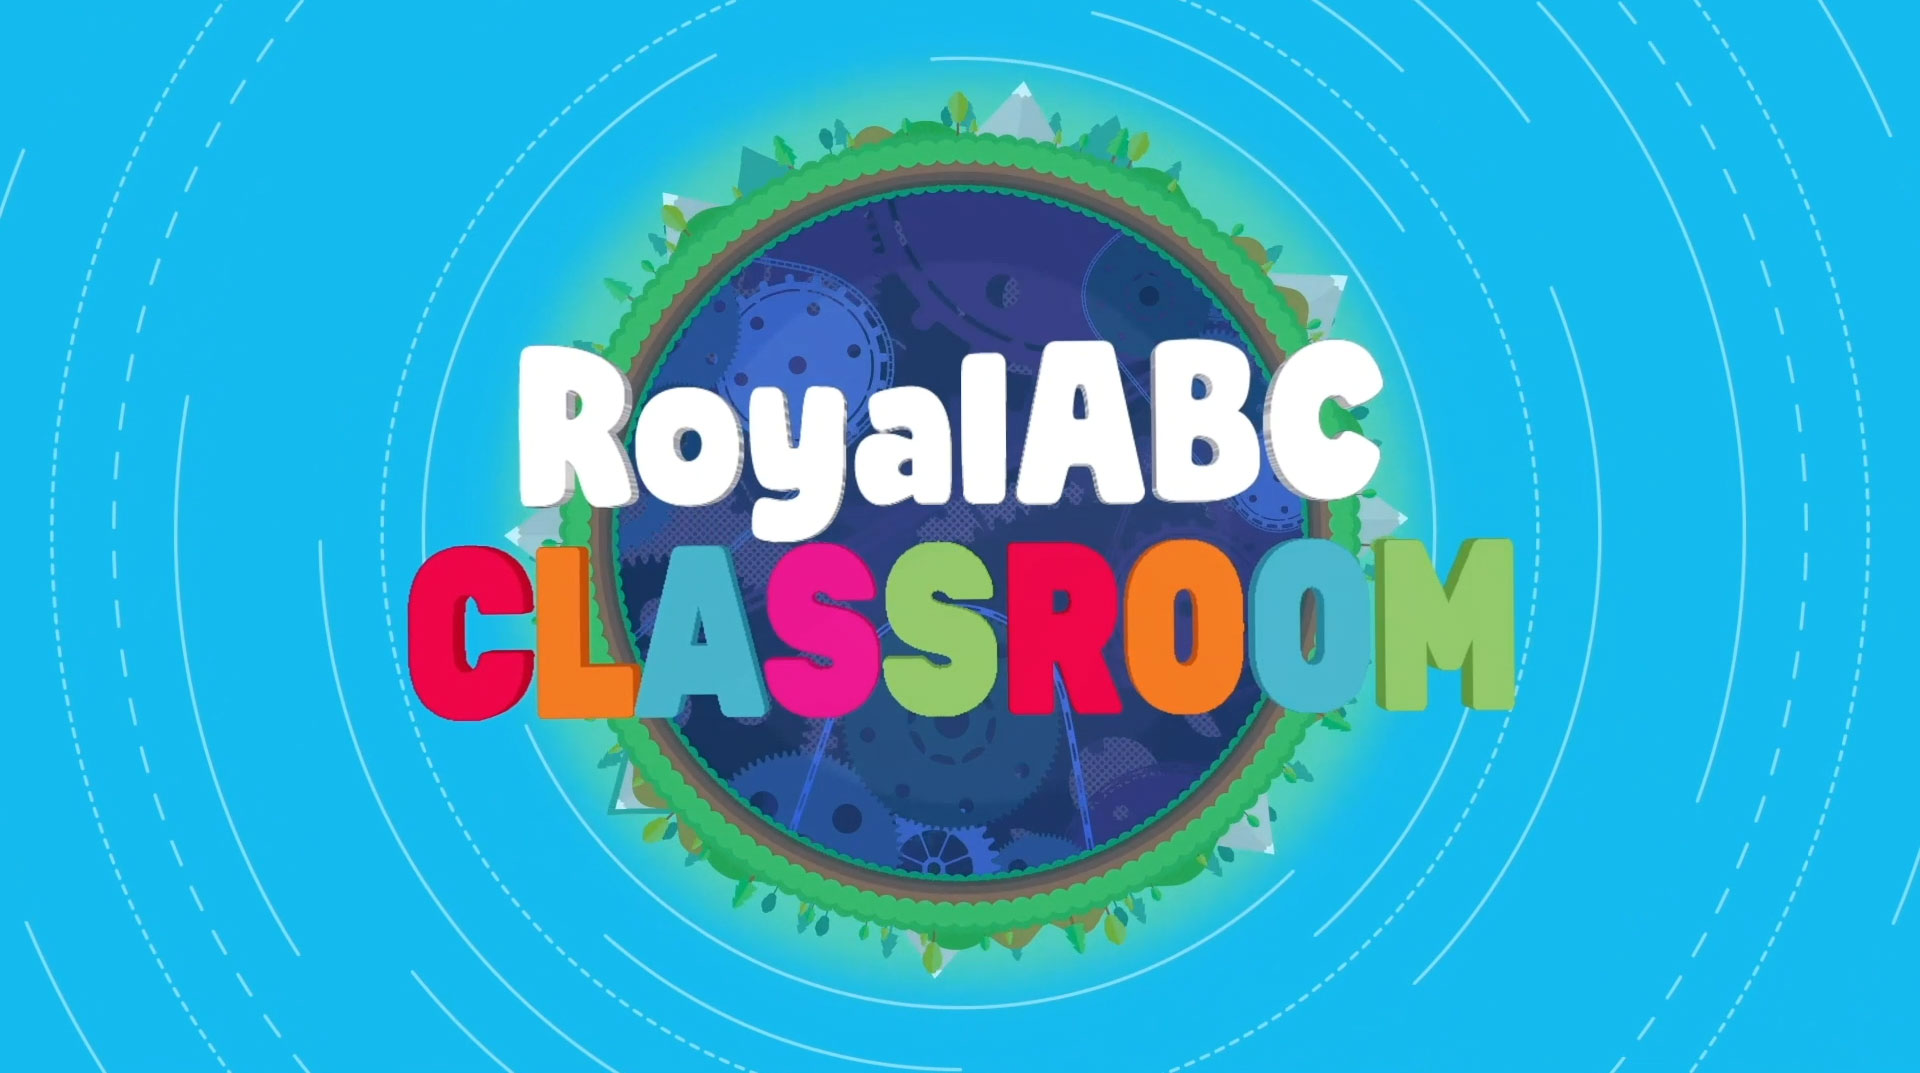 Hãy cùng đến với RoyalABC và tham gia buổi dạy vẽ cô giáo trong ngày 20 tháng